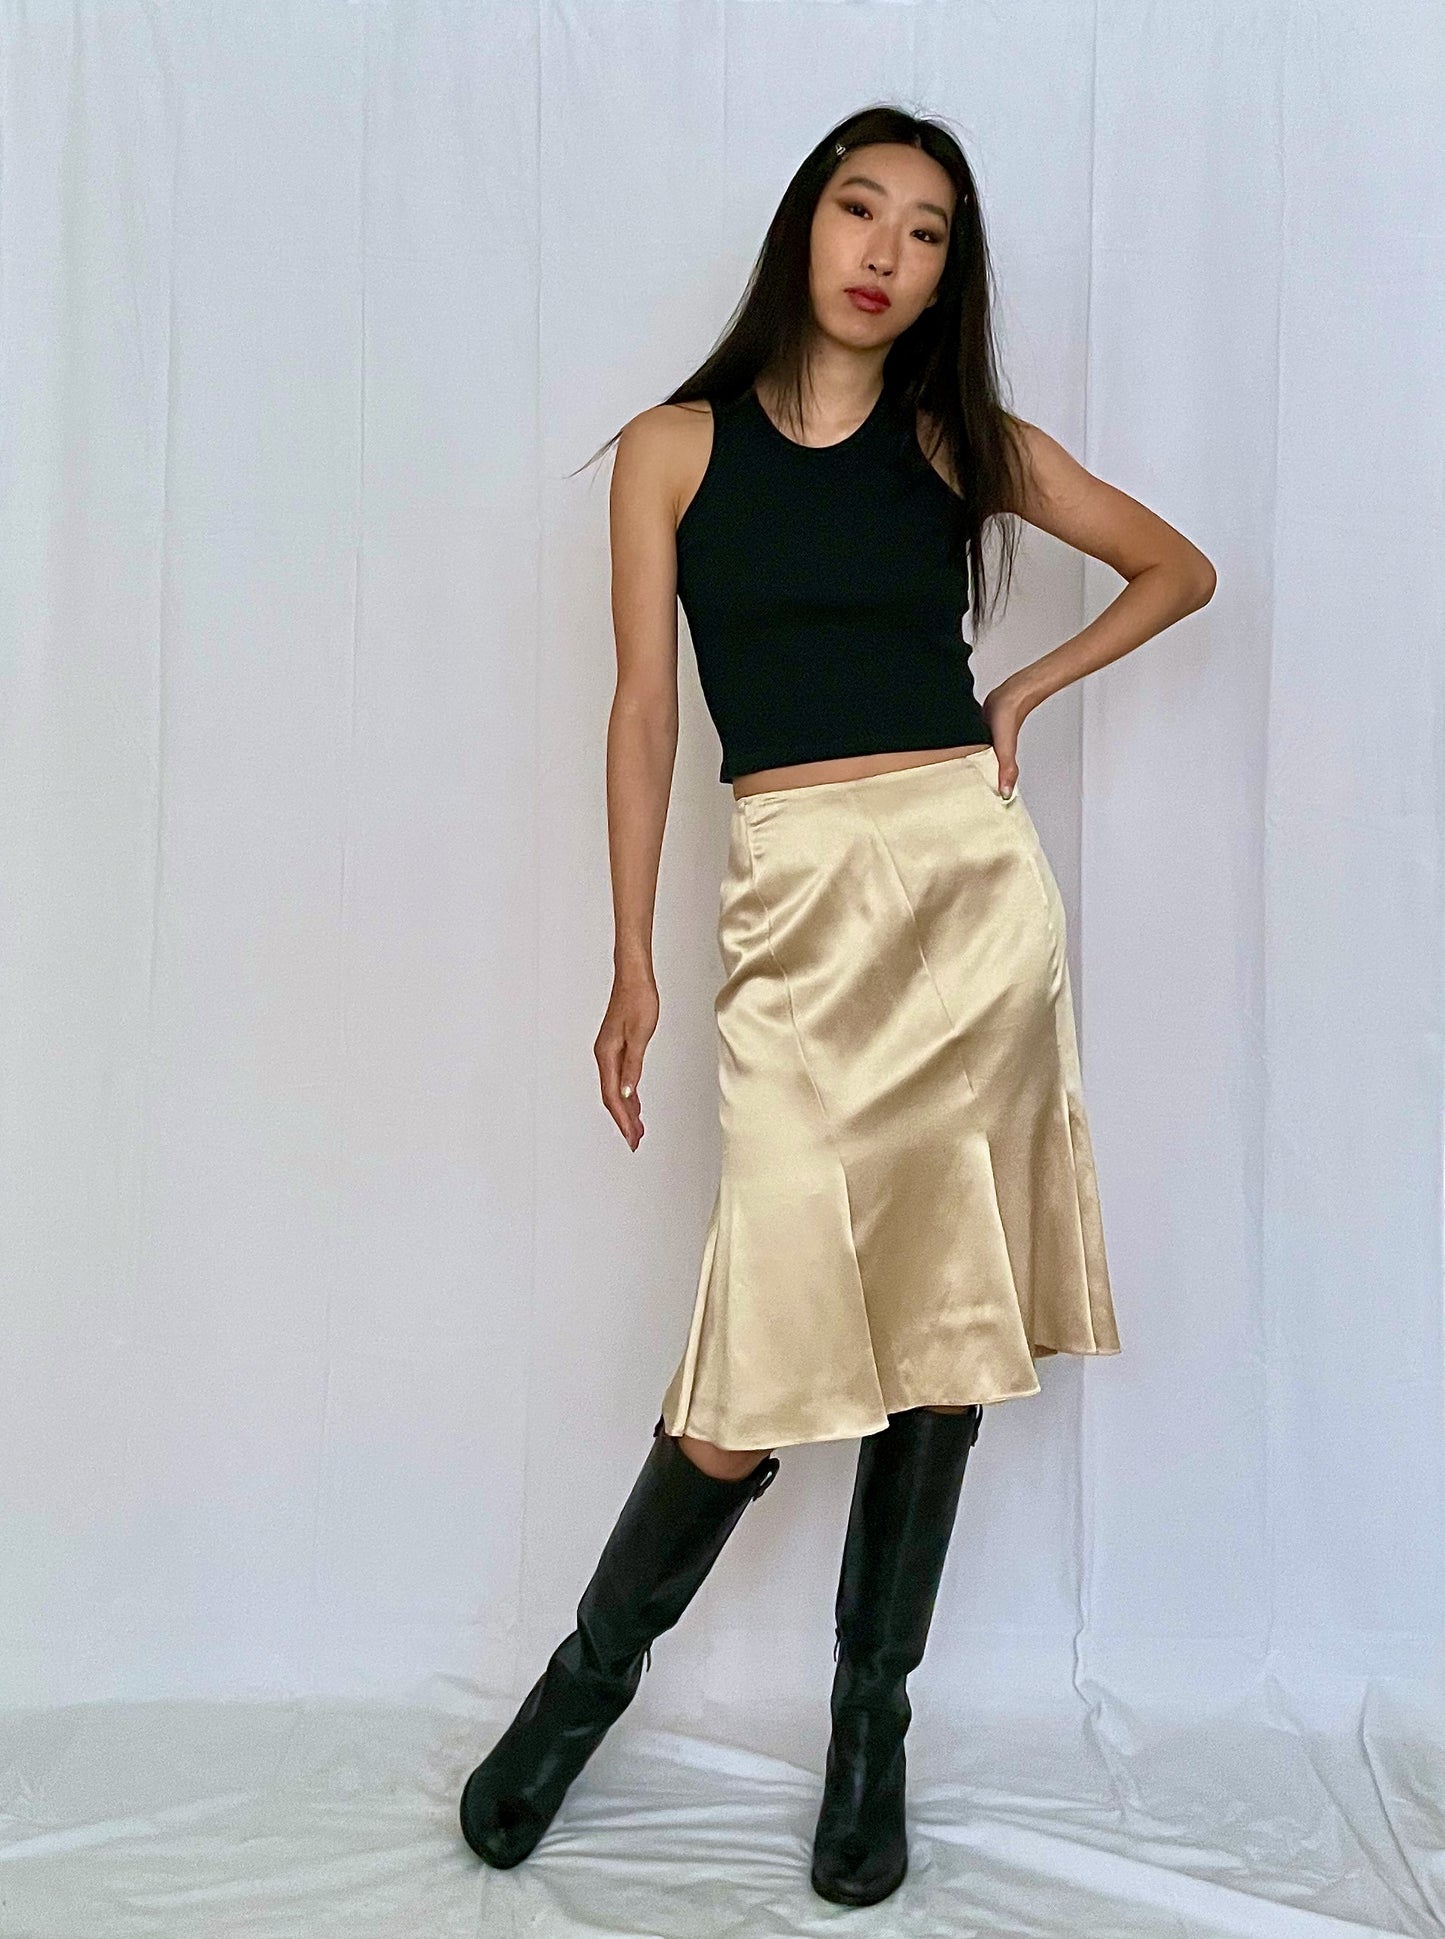 Vintage Silk Pleated Skirt